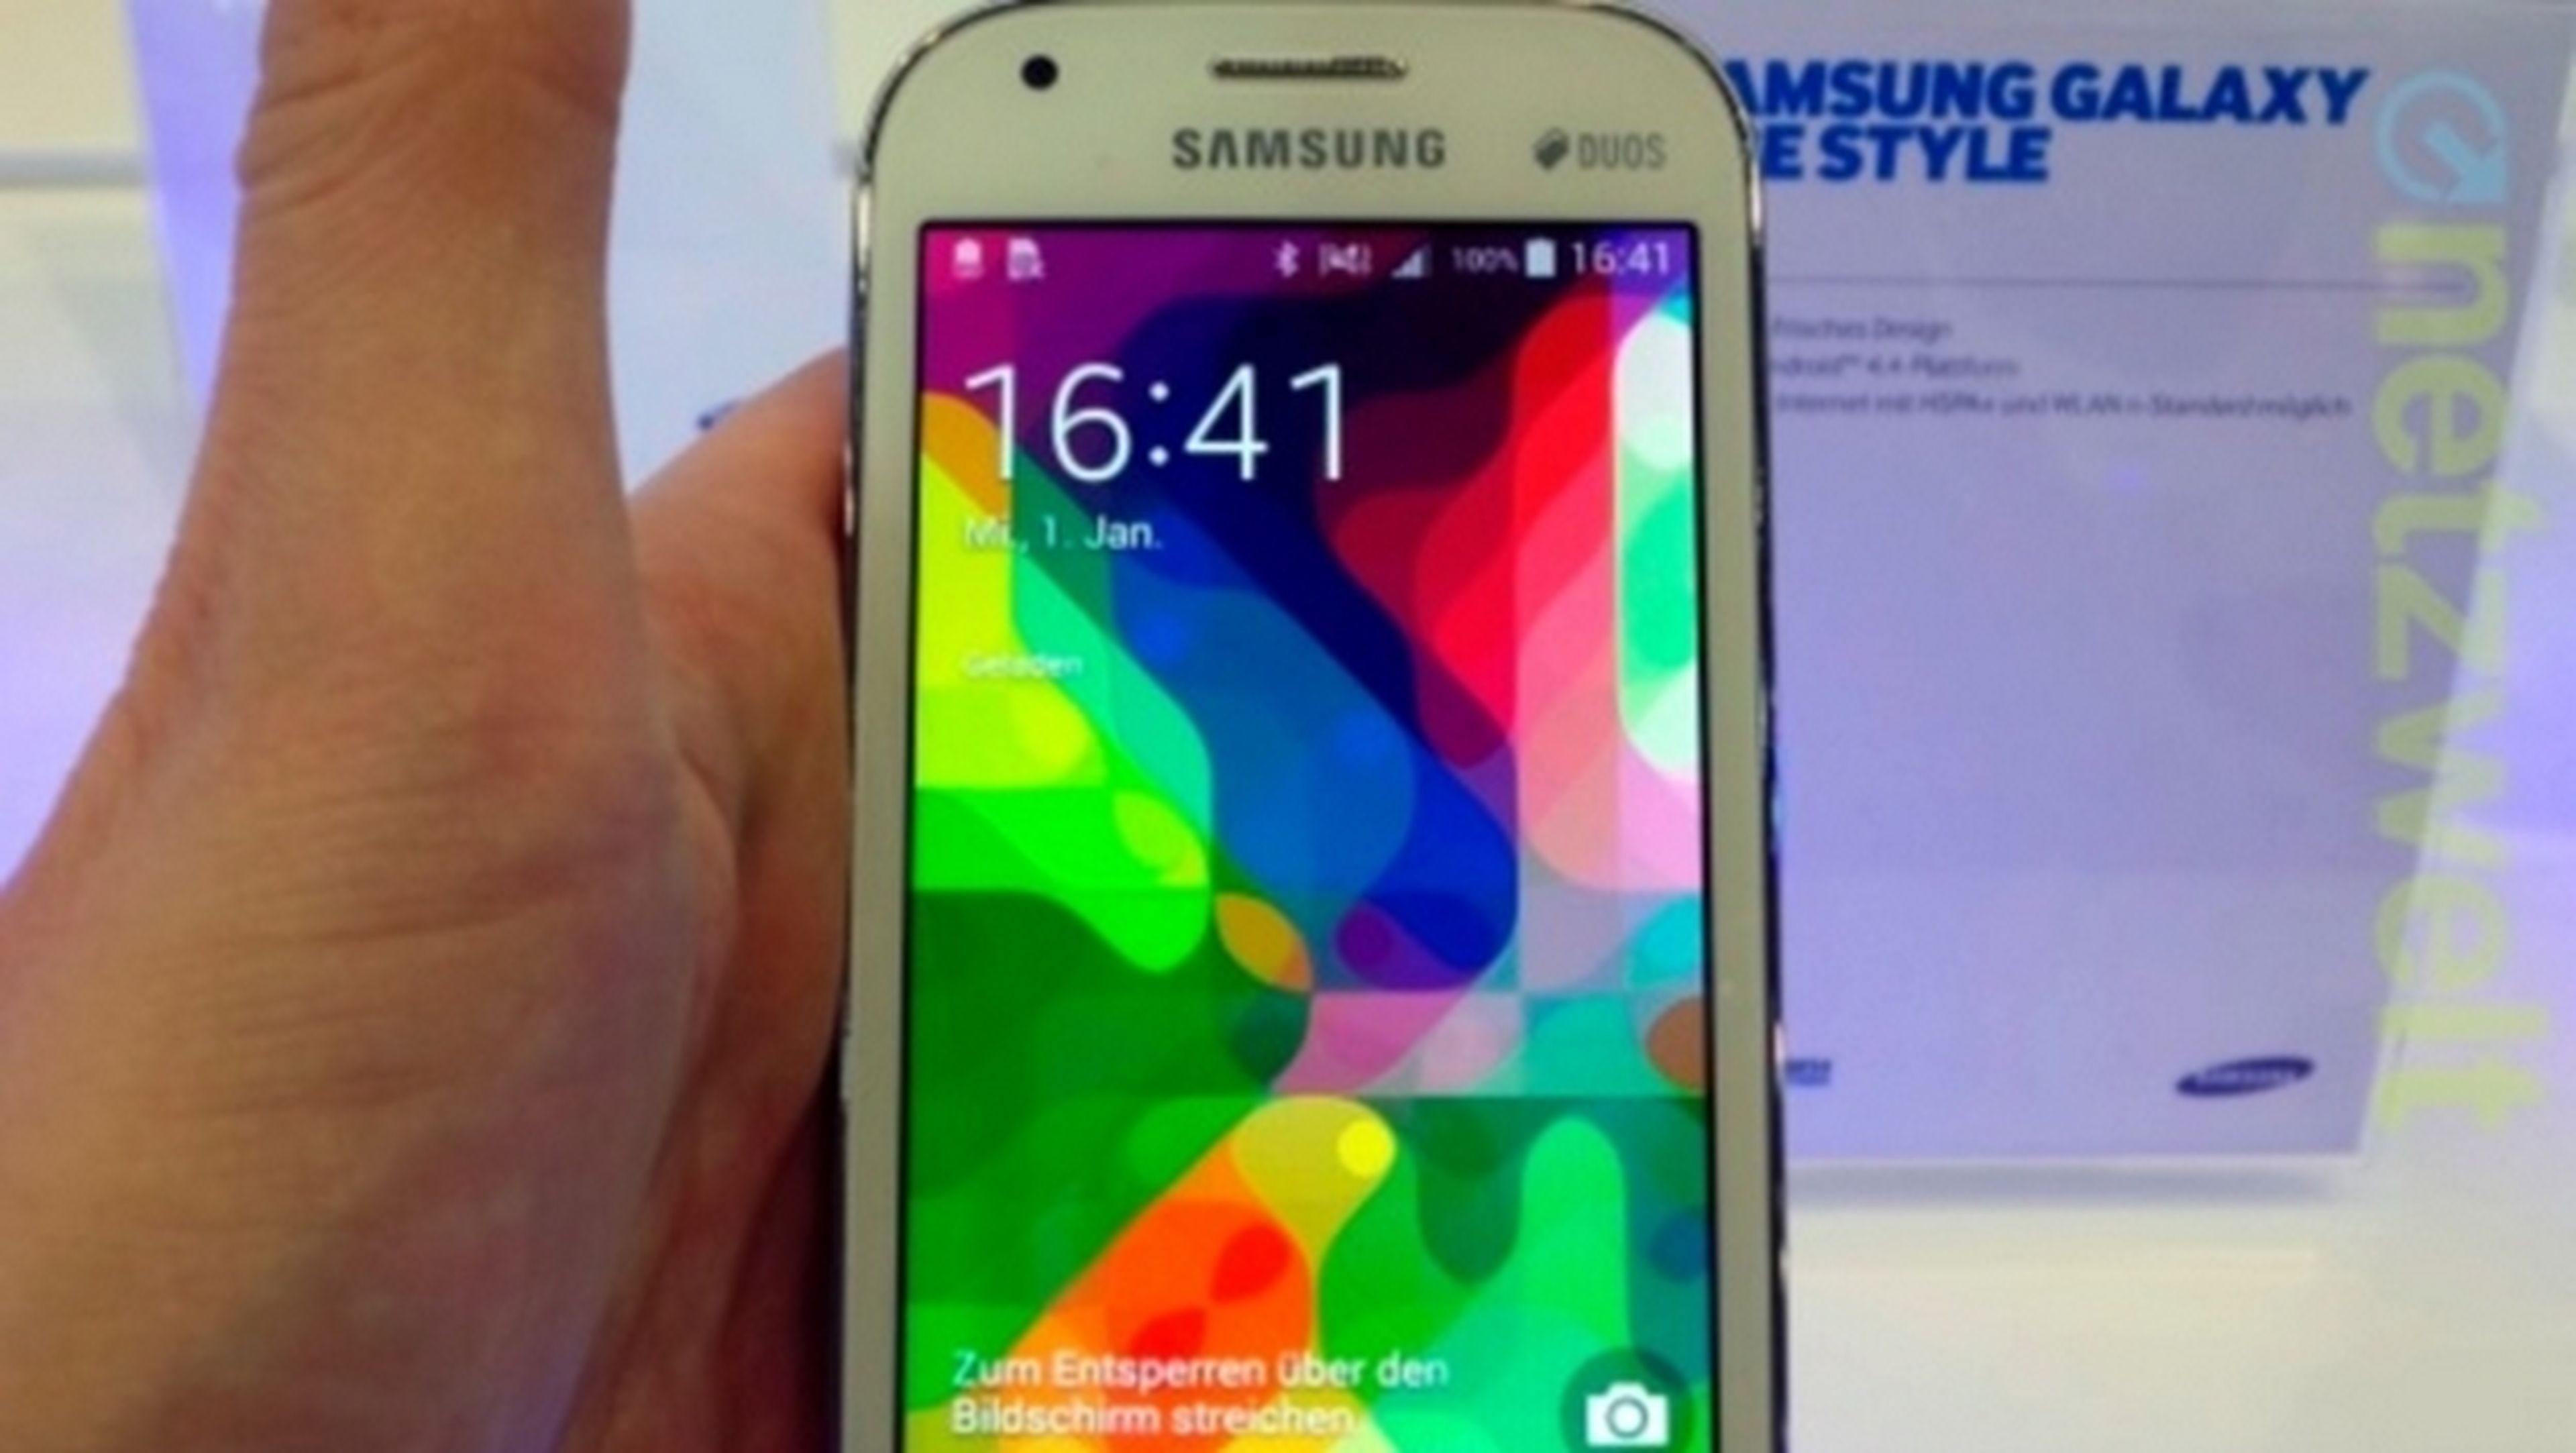 Las mejores ofertas en Teléfonos inteligentes Samsung Galaxy Ace Android  4.0 - 4.4 en pantalla